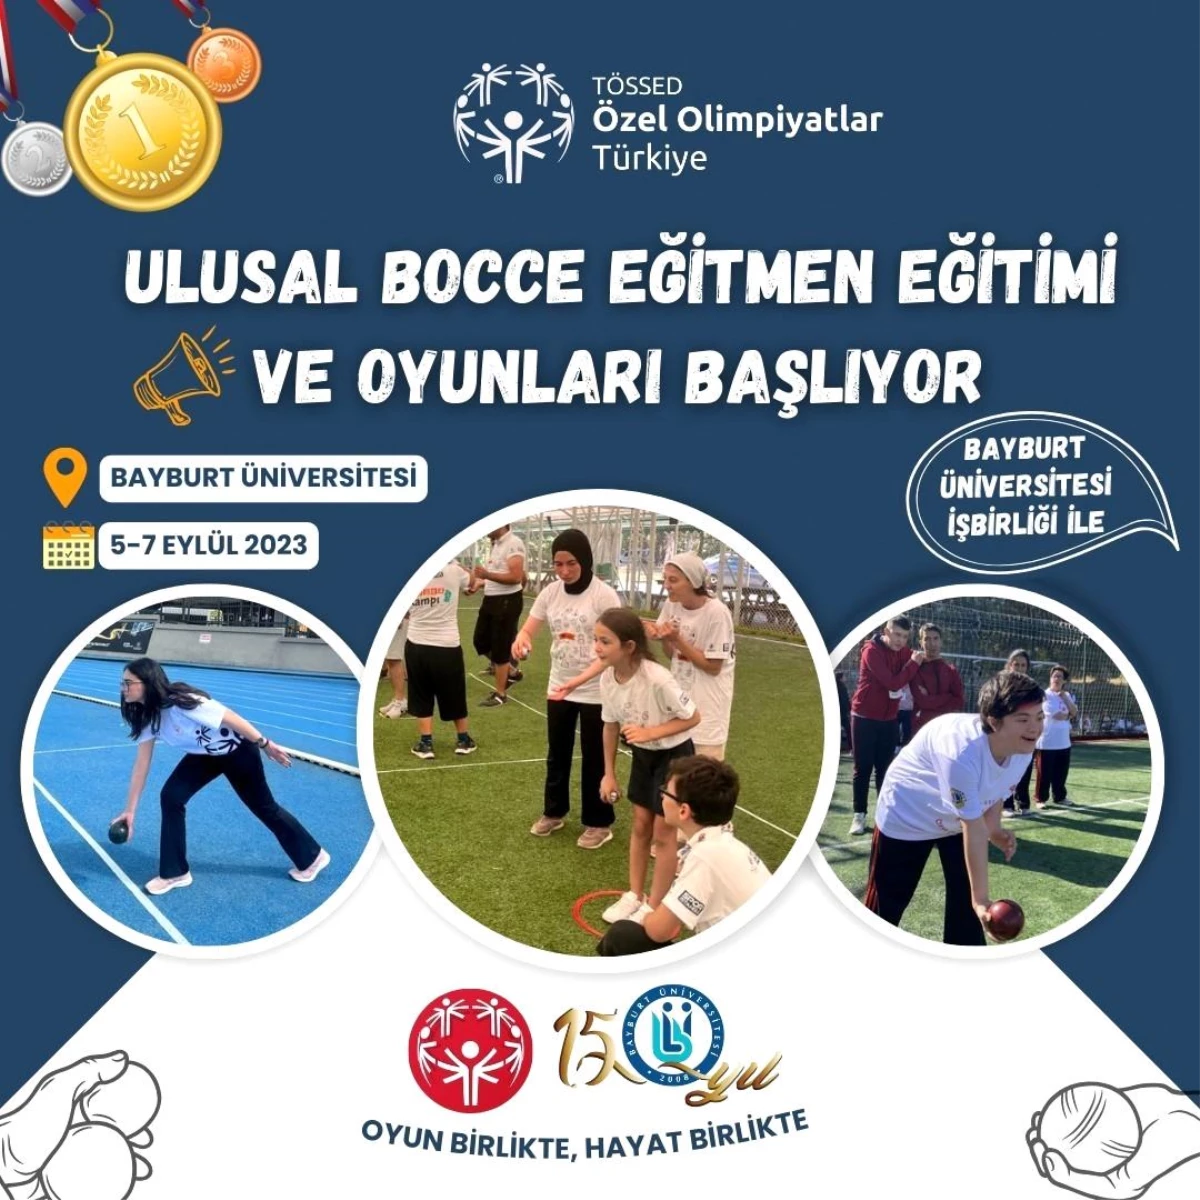 Özel Olimpiyatlar Türkiye, Ulusal Bocce Eğitmen Eğitimi ve Oyunları’nı Bayburt’ta düzenliyor